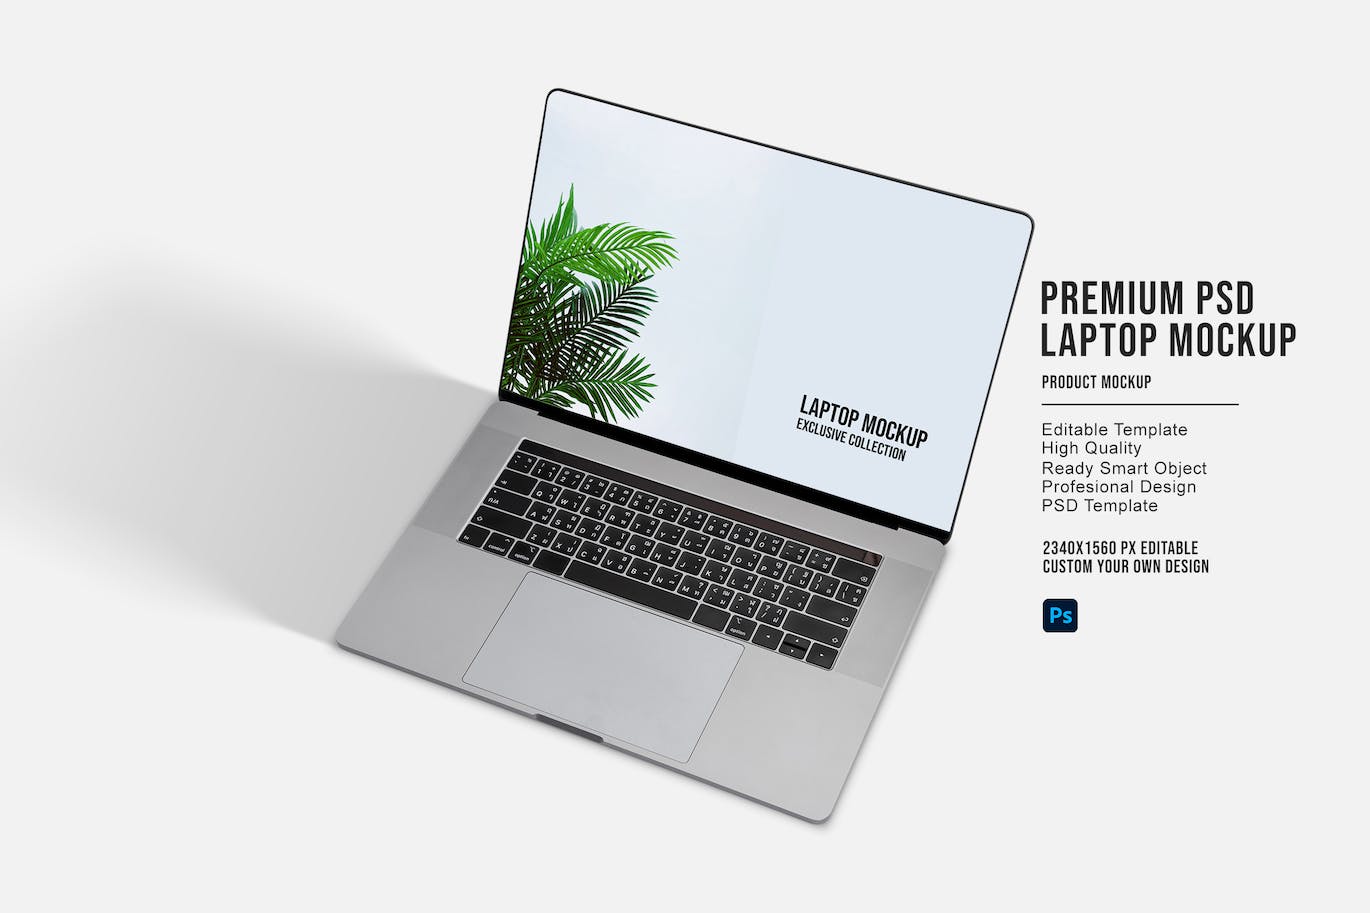 高级PSD笔记本电脑屏幕样机 Premium PSD Laptop Mockup 样机素材 第1张